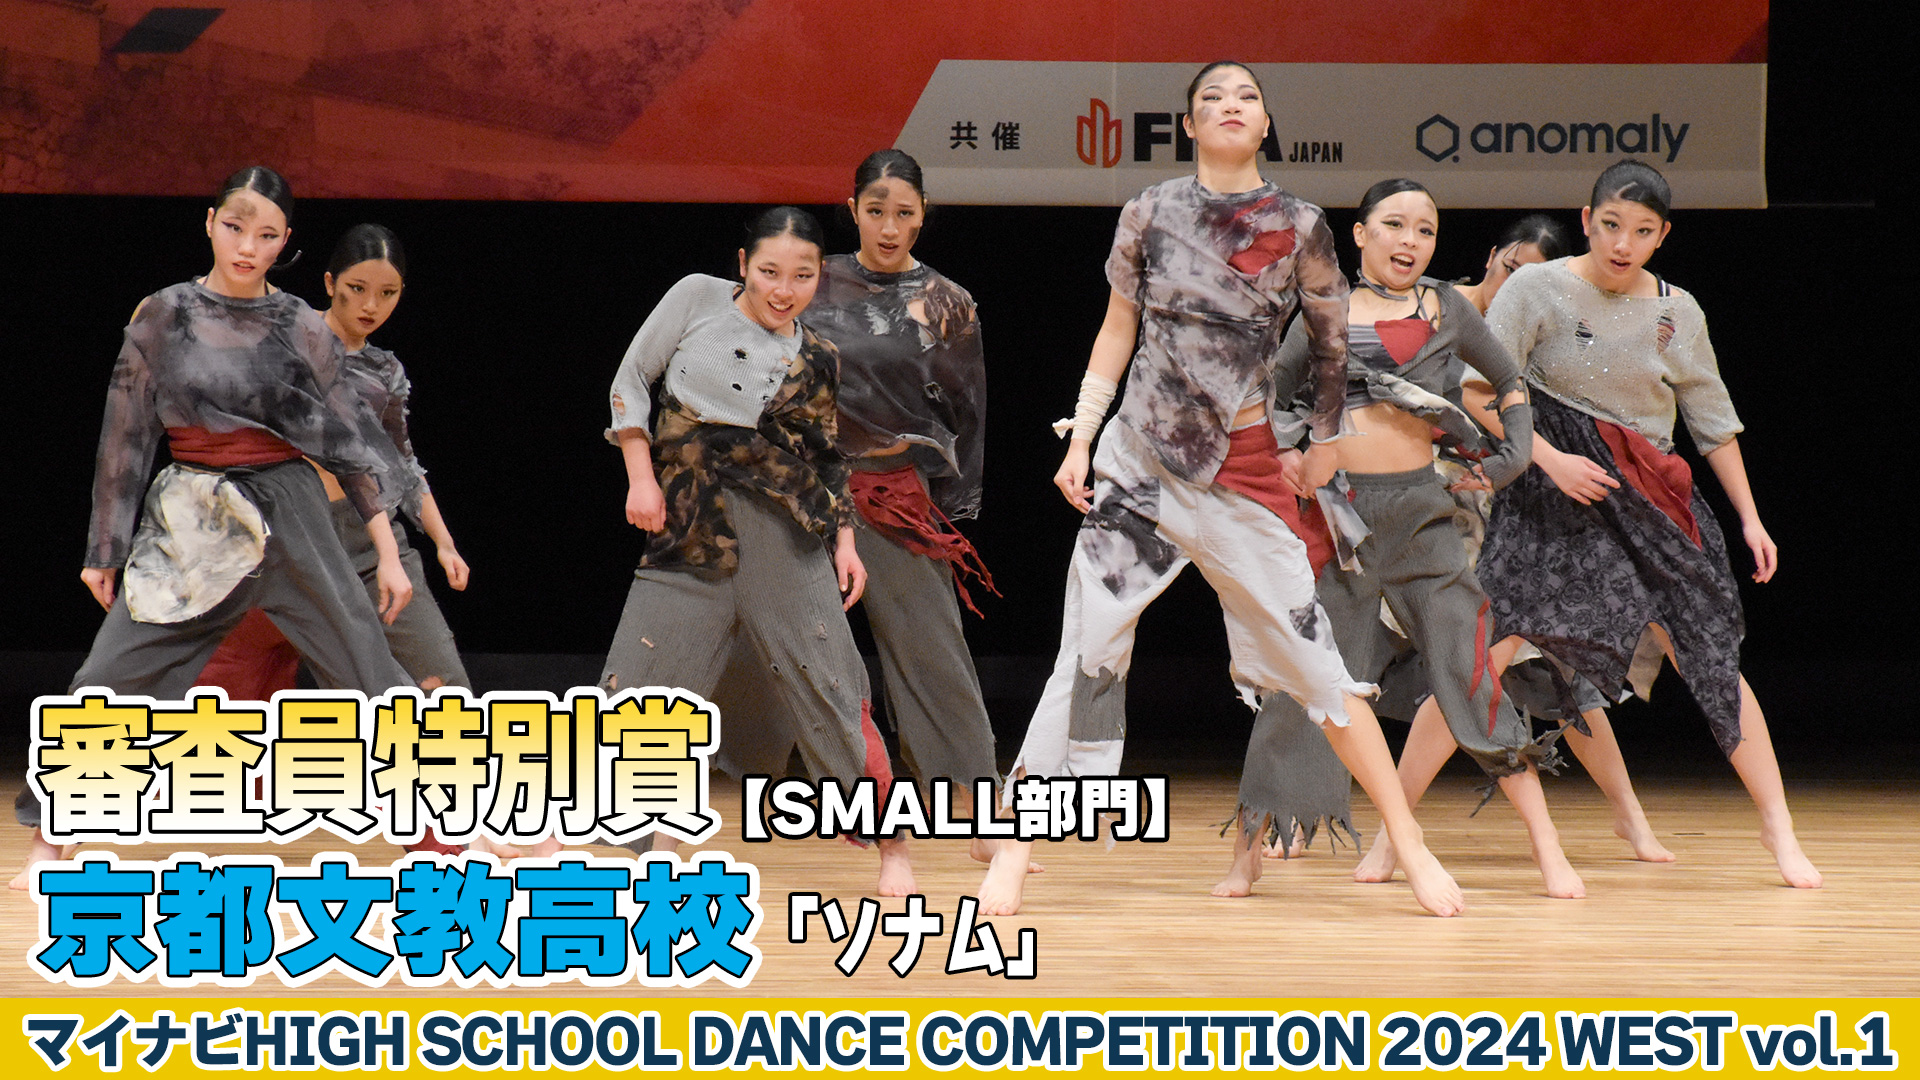 【動画】京都文教高校「ソナム」がSMALL部門で演技を披露！＜マイナビHIGH SCHOOL DANCE COMPETITION 2024 WEST vol.2＞